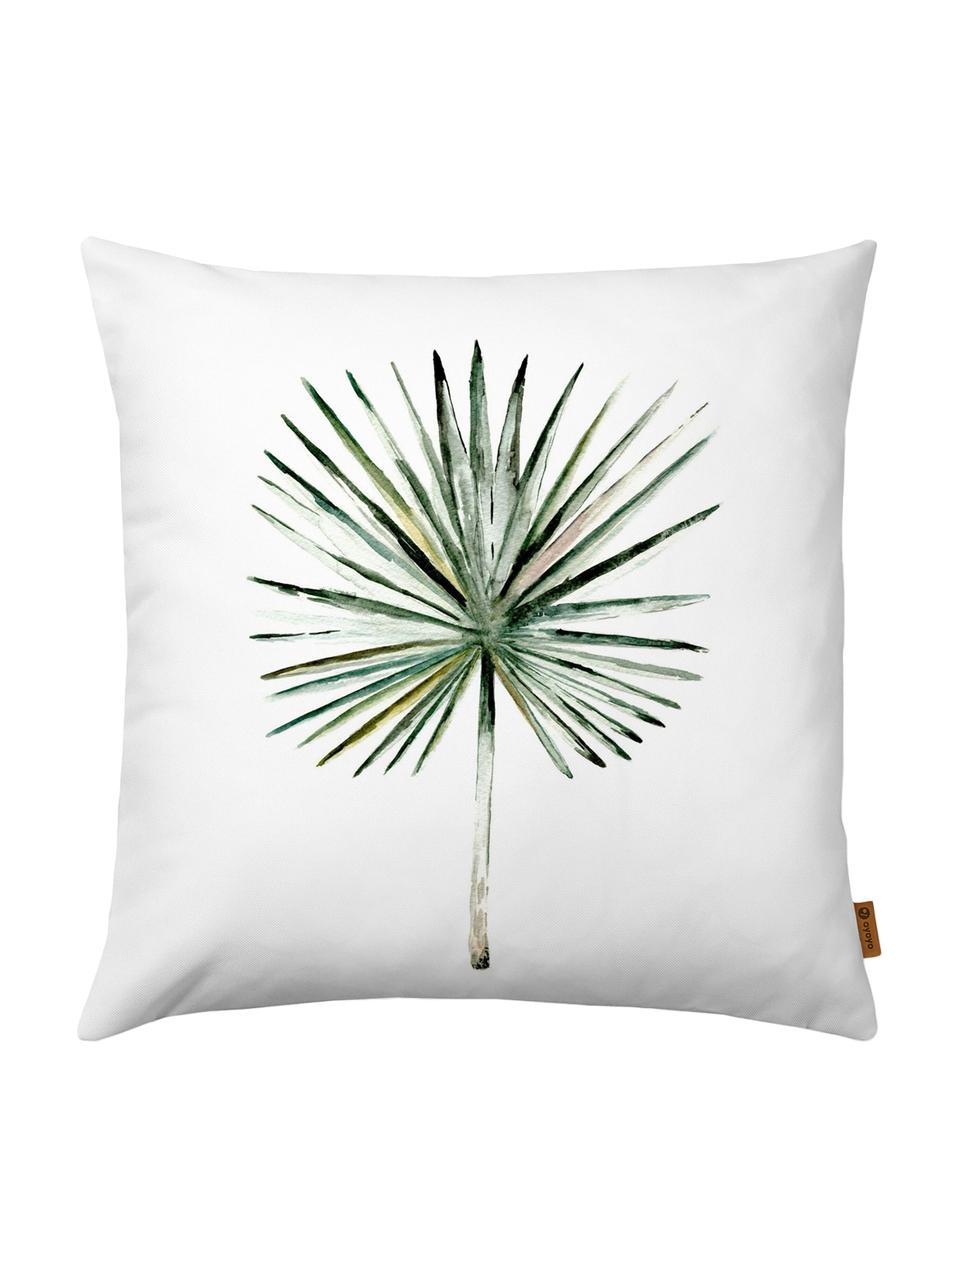 Kussenhoes Fan Palm, Polyester, Wit, groentinten, 40 x 40 cm